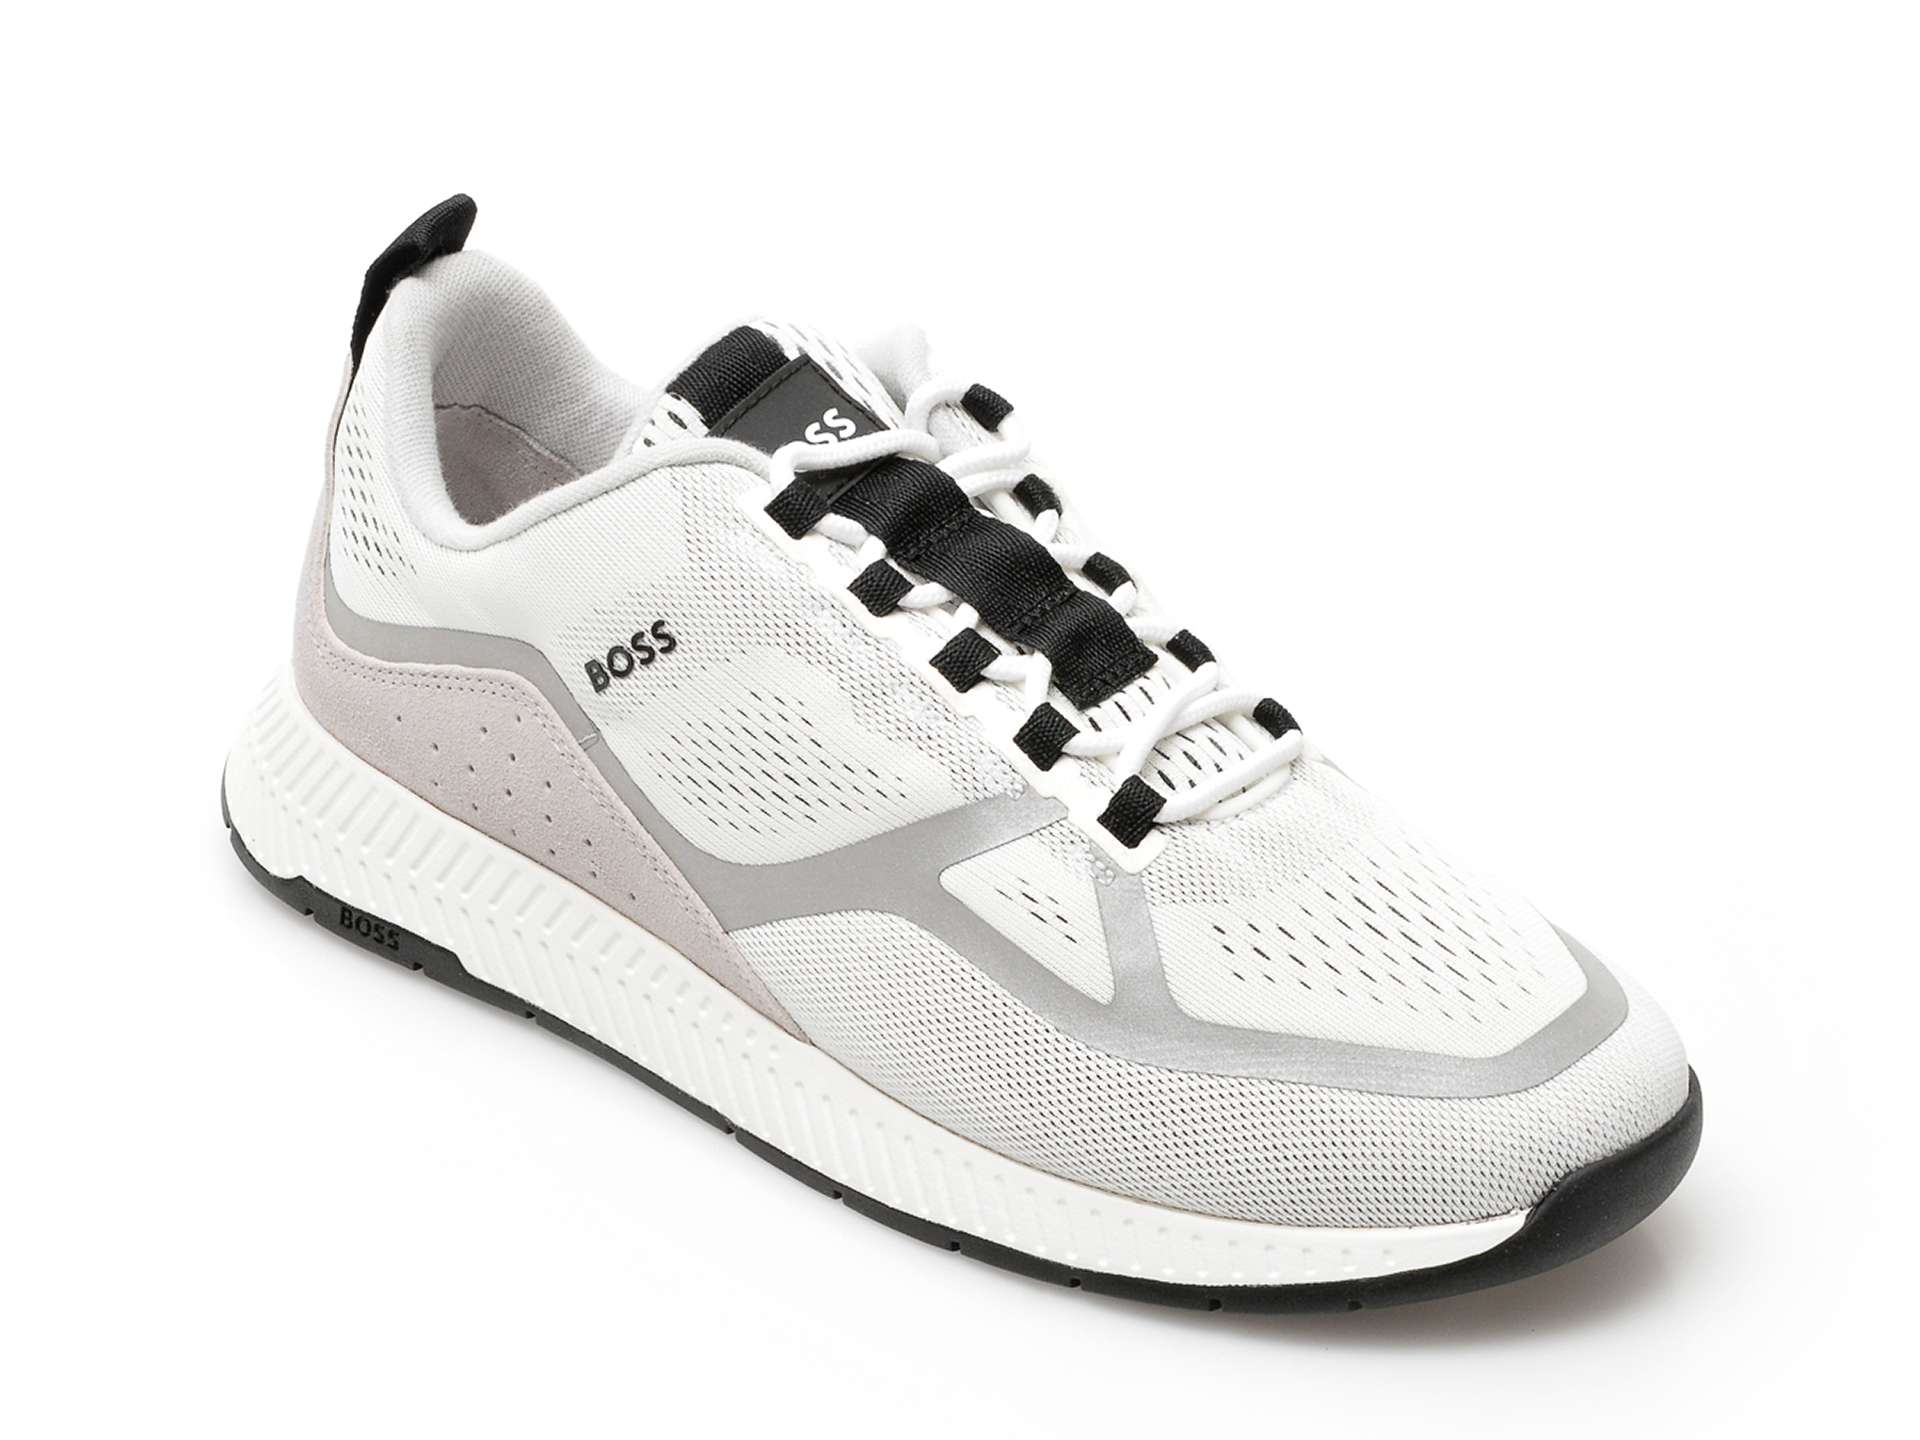 Pantofi sport HUGO BOSS albi, 622, din material textil /barbati/pantofi